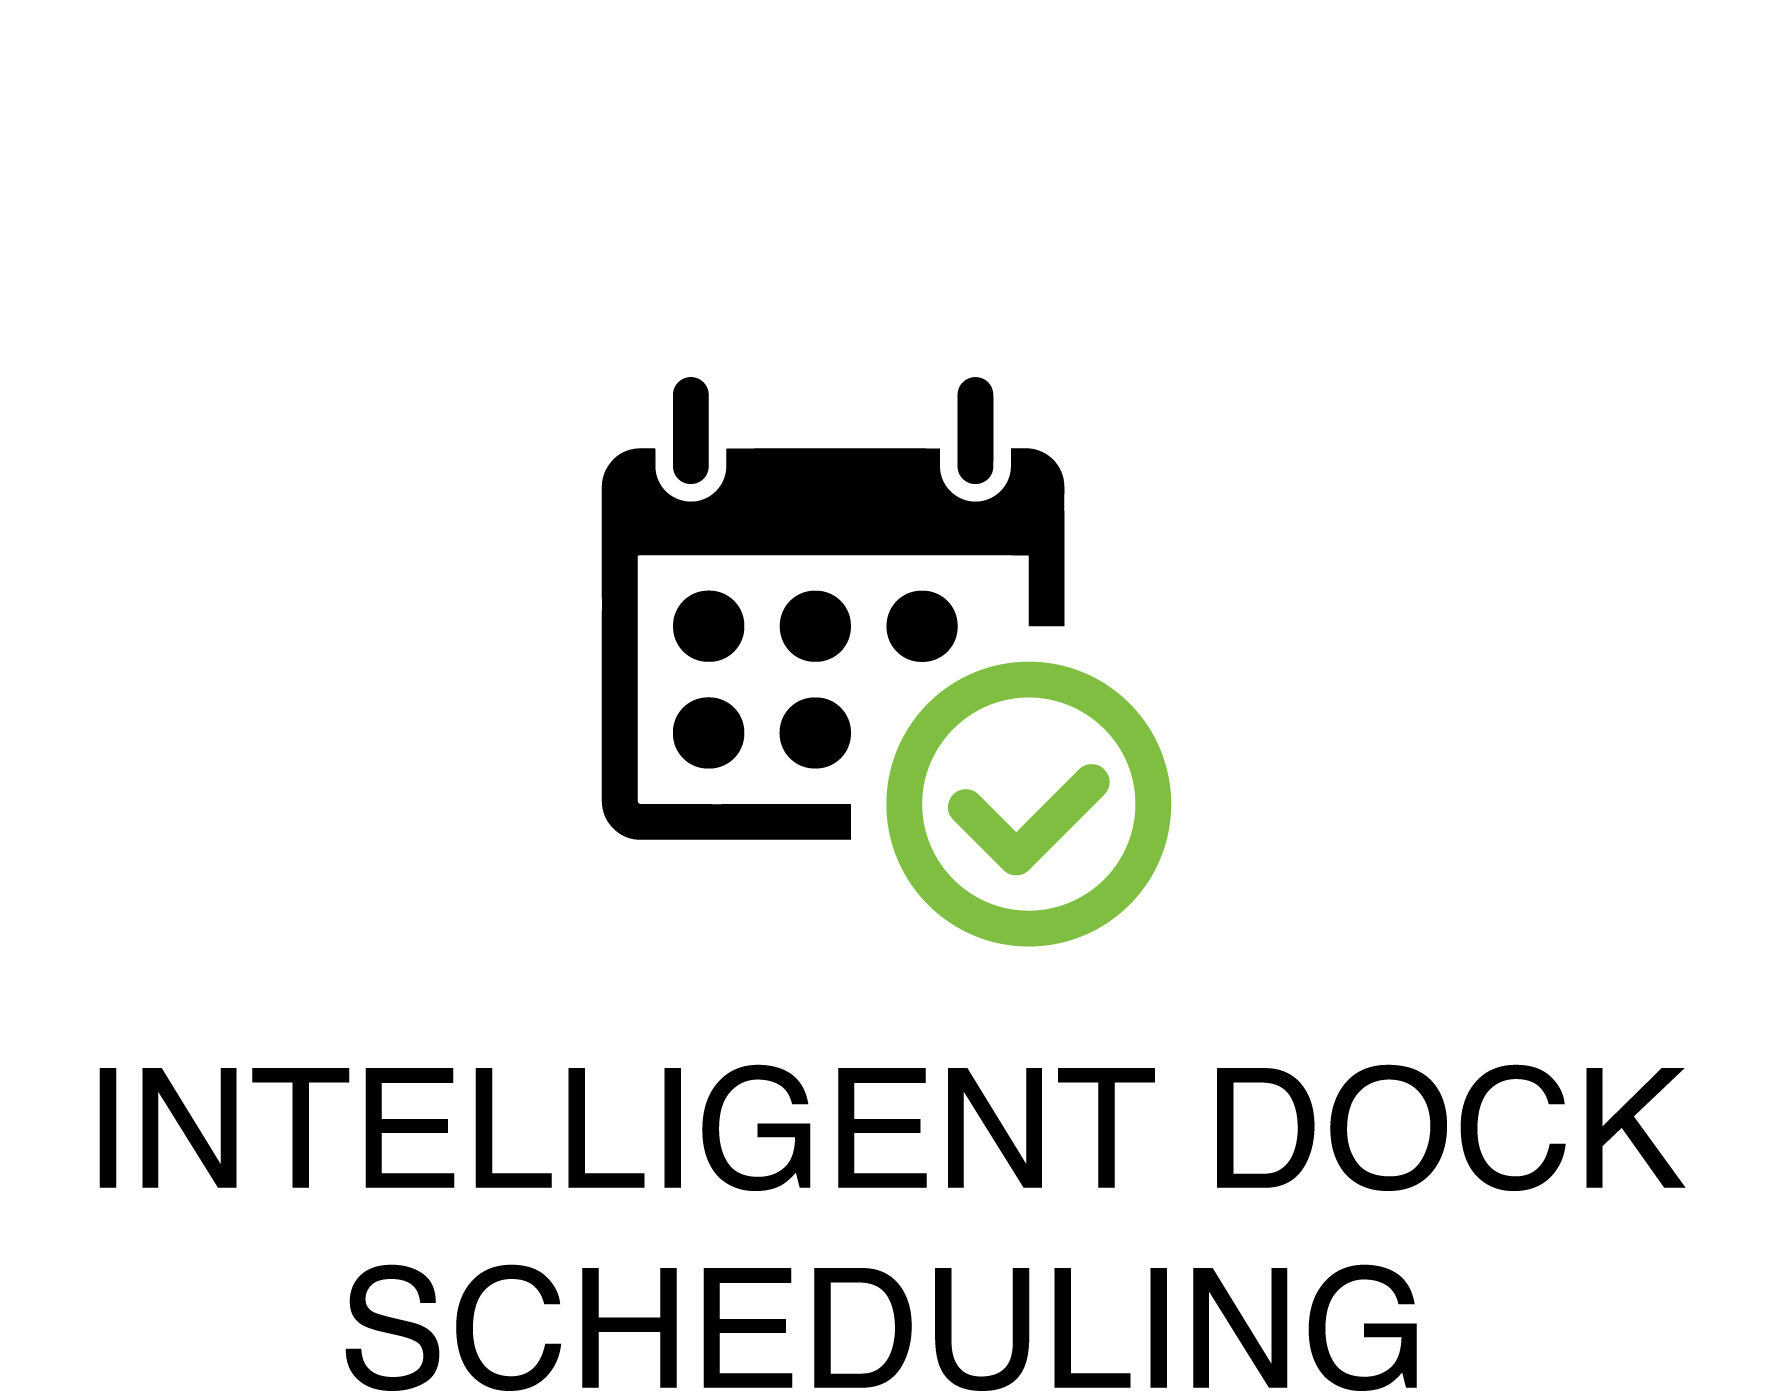 Intelligent Dock Scheduling